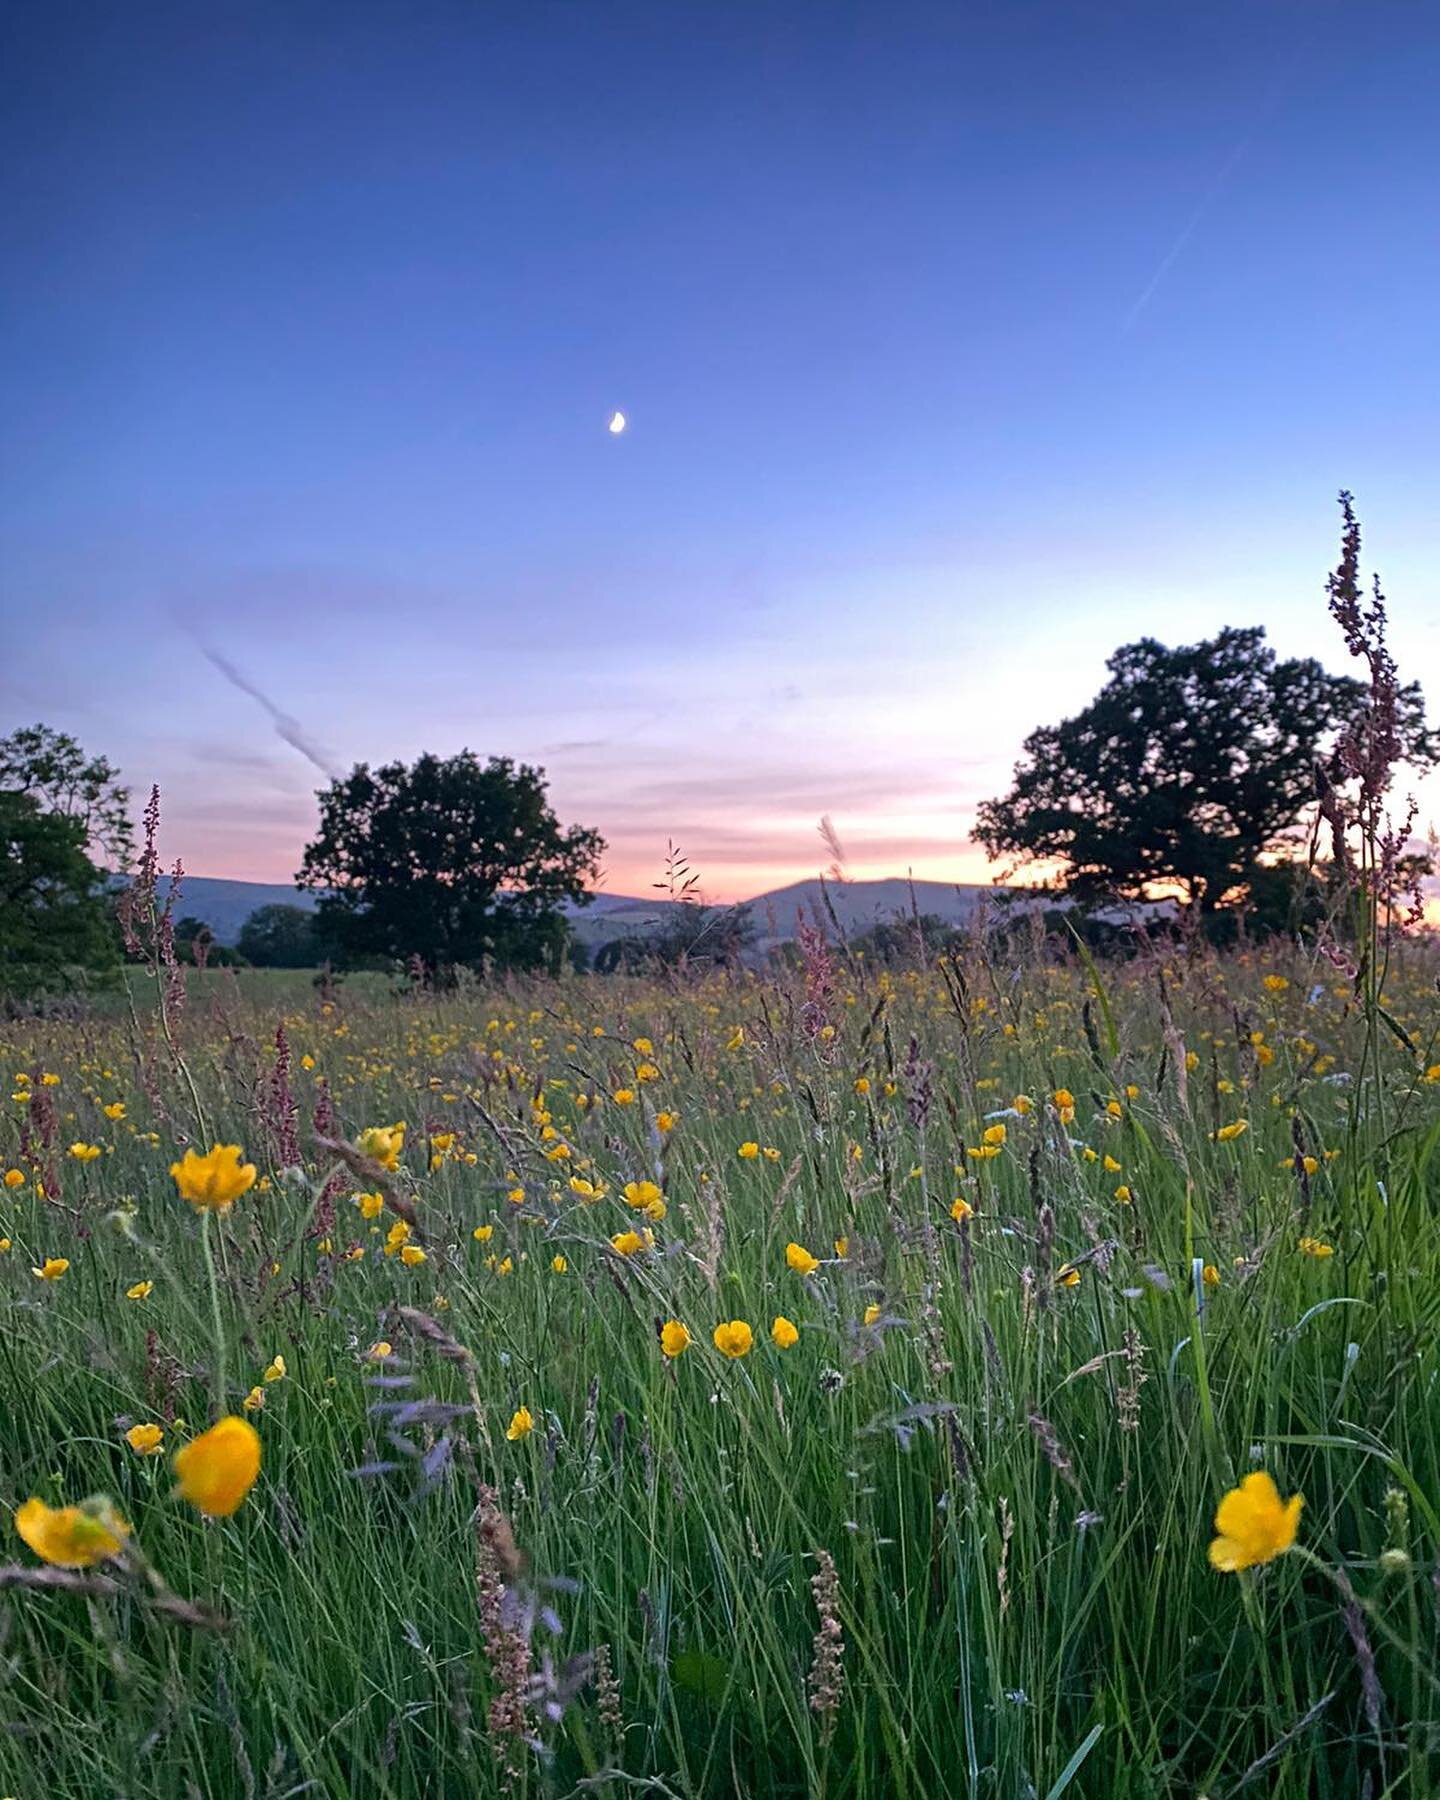 Midsummer moonlight in the wildflower meadow. #wildflowermeadow #nofilters